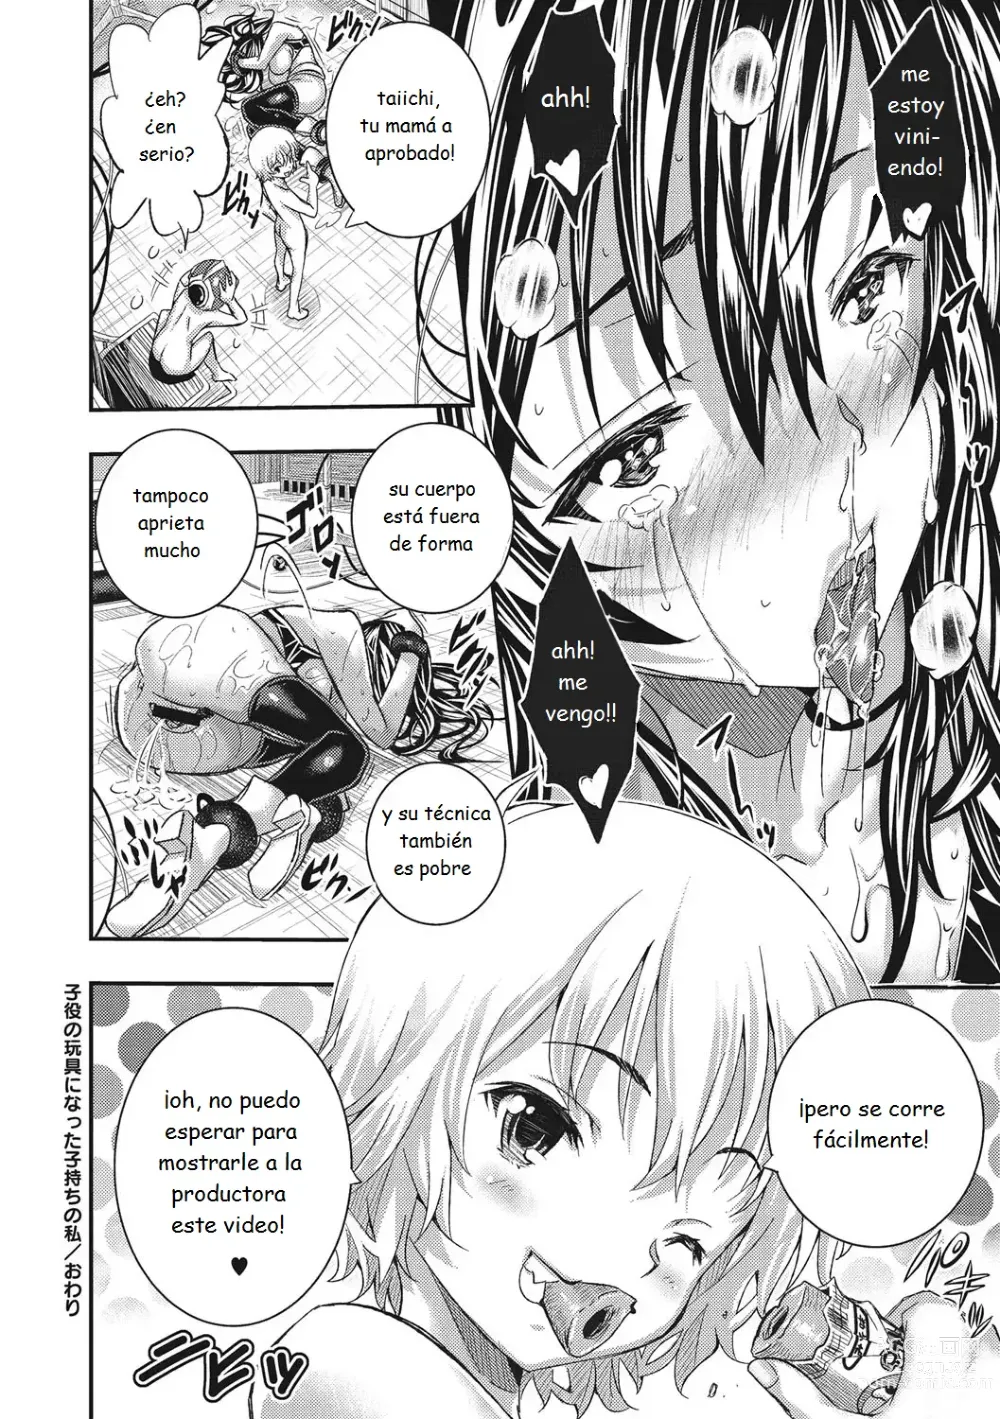 Page 54 of manga Ive Turned into a Child Actors Toy! - Me he convertido en el juguete de un niño actor